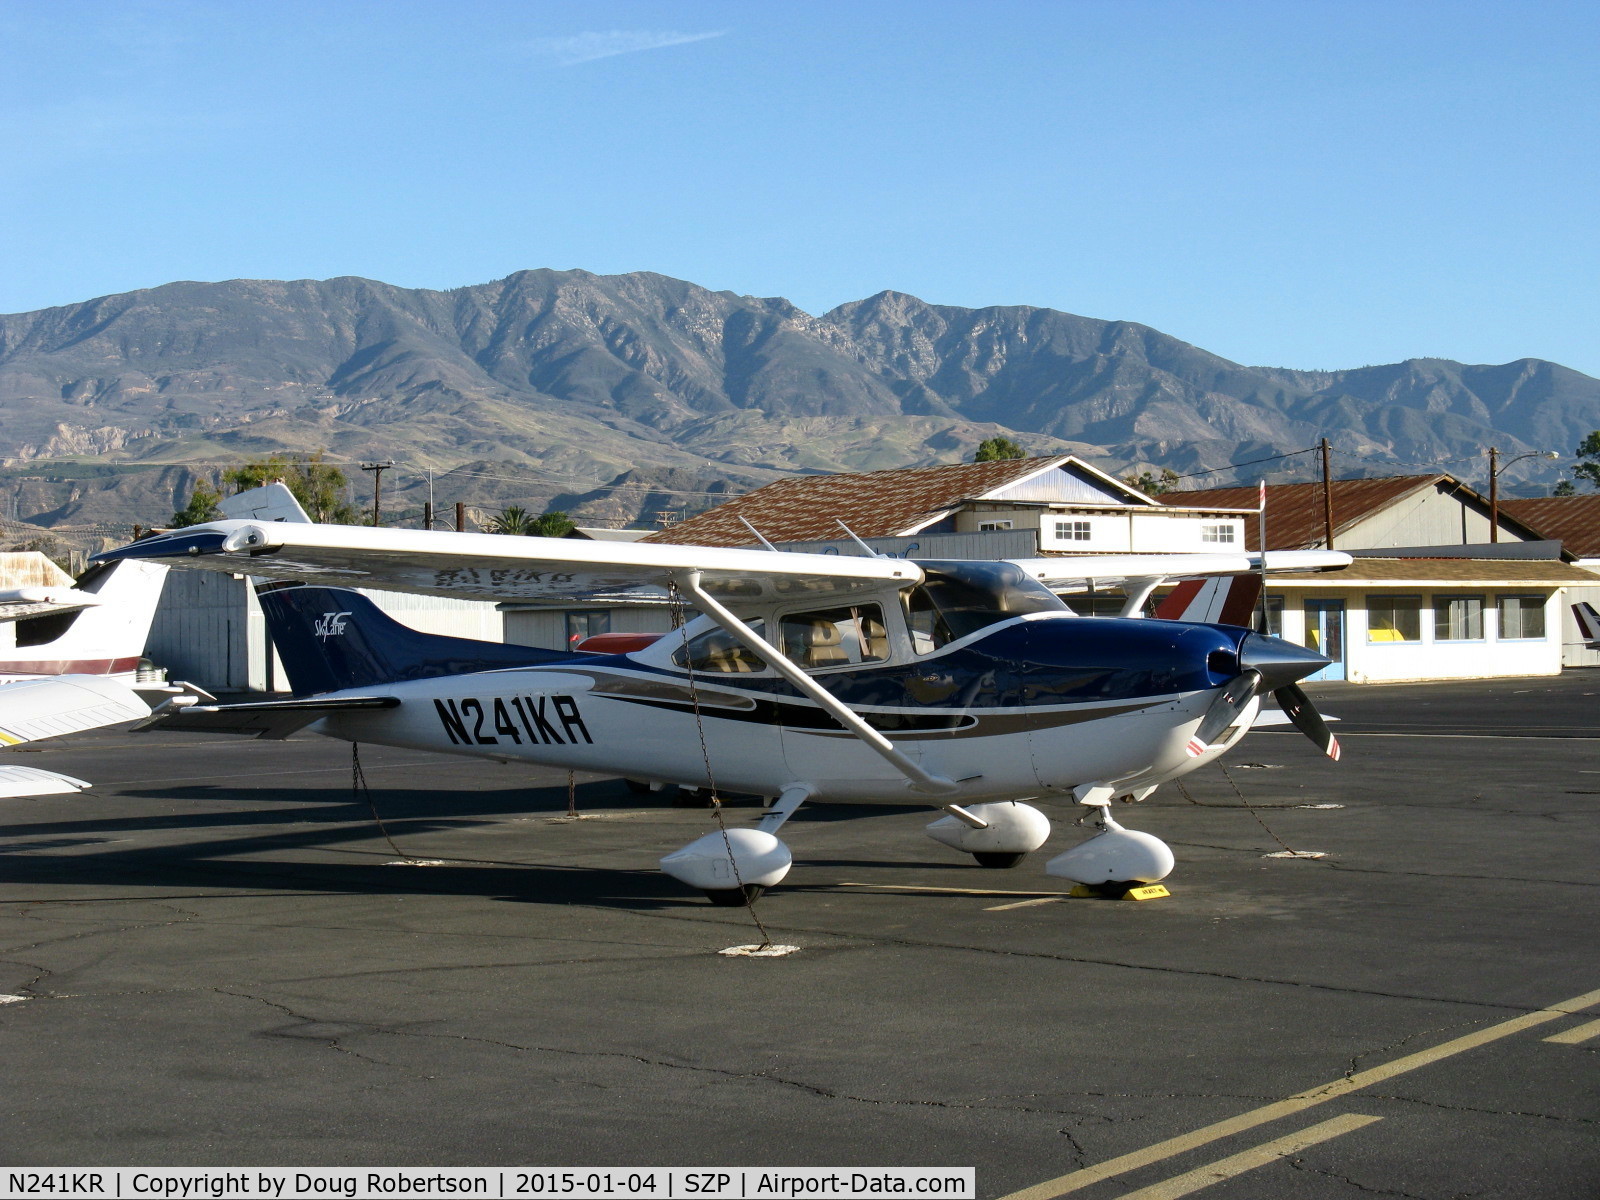 N241KR, 2004 Cessna T182T Turbo Skylane C/N T18208326, 2004 Cessna T182T TURBO SKYLANE, Lycoming TIO-540-AK1A 235 Hp